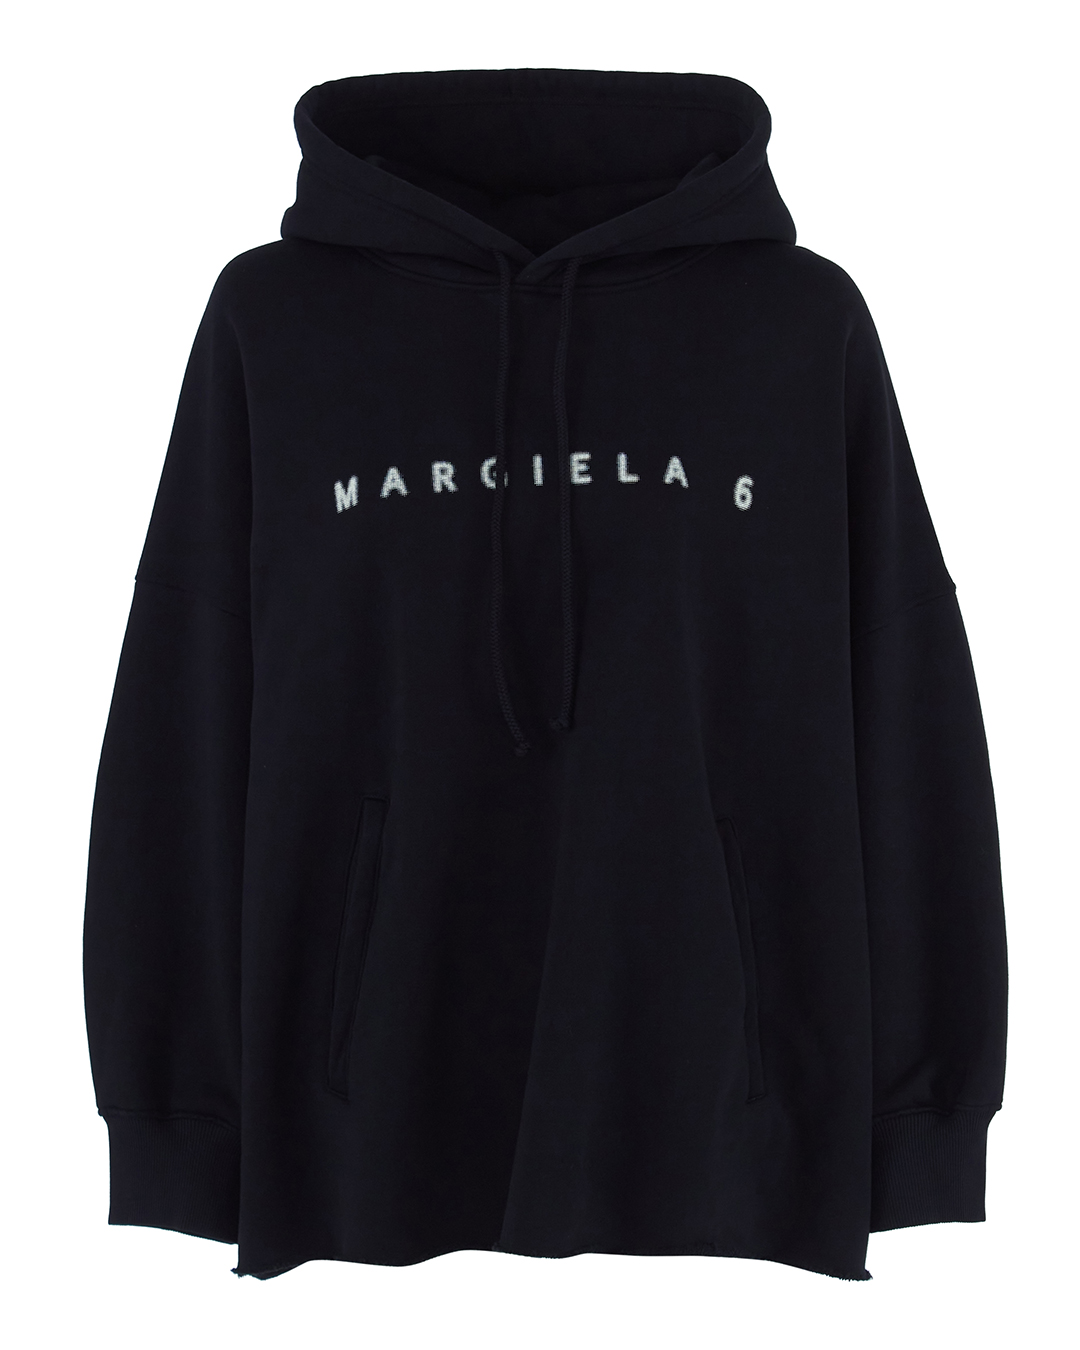 MM6 Maison Margiela силуэта oversize артикул  марки MM6 Maison Margiela купить за 50000 руб.